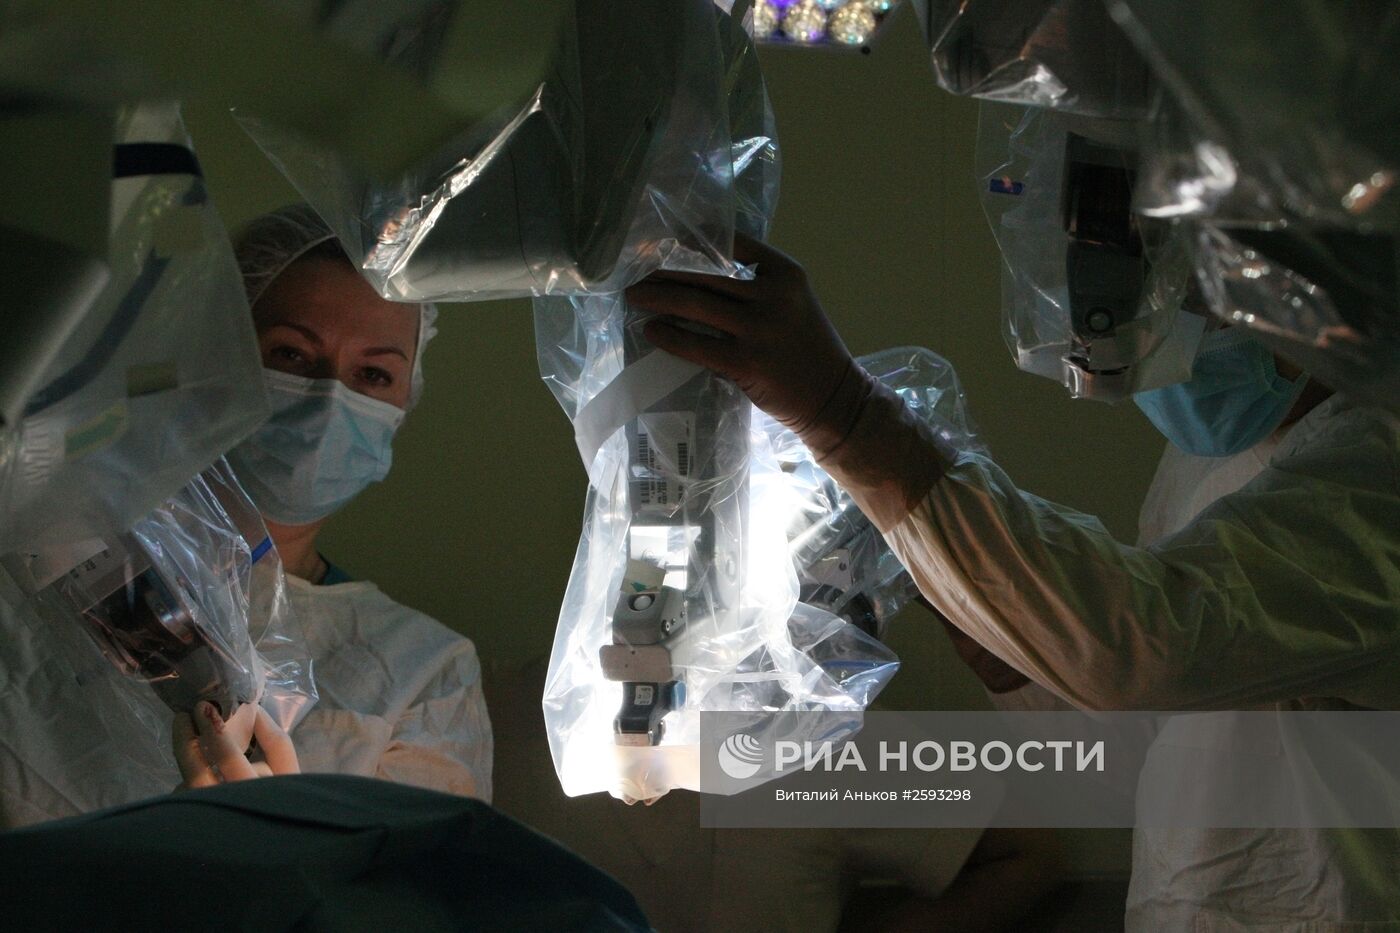 Операция с помощью робота Да Винчи во Владивостоке